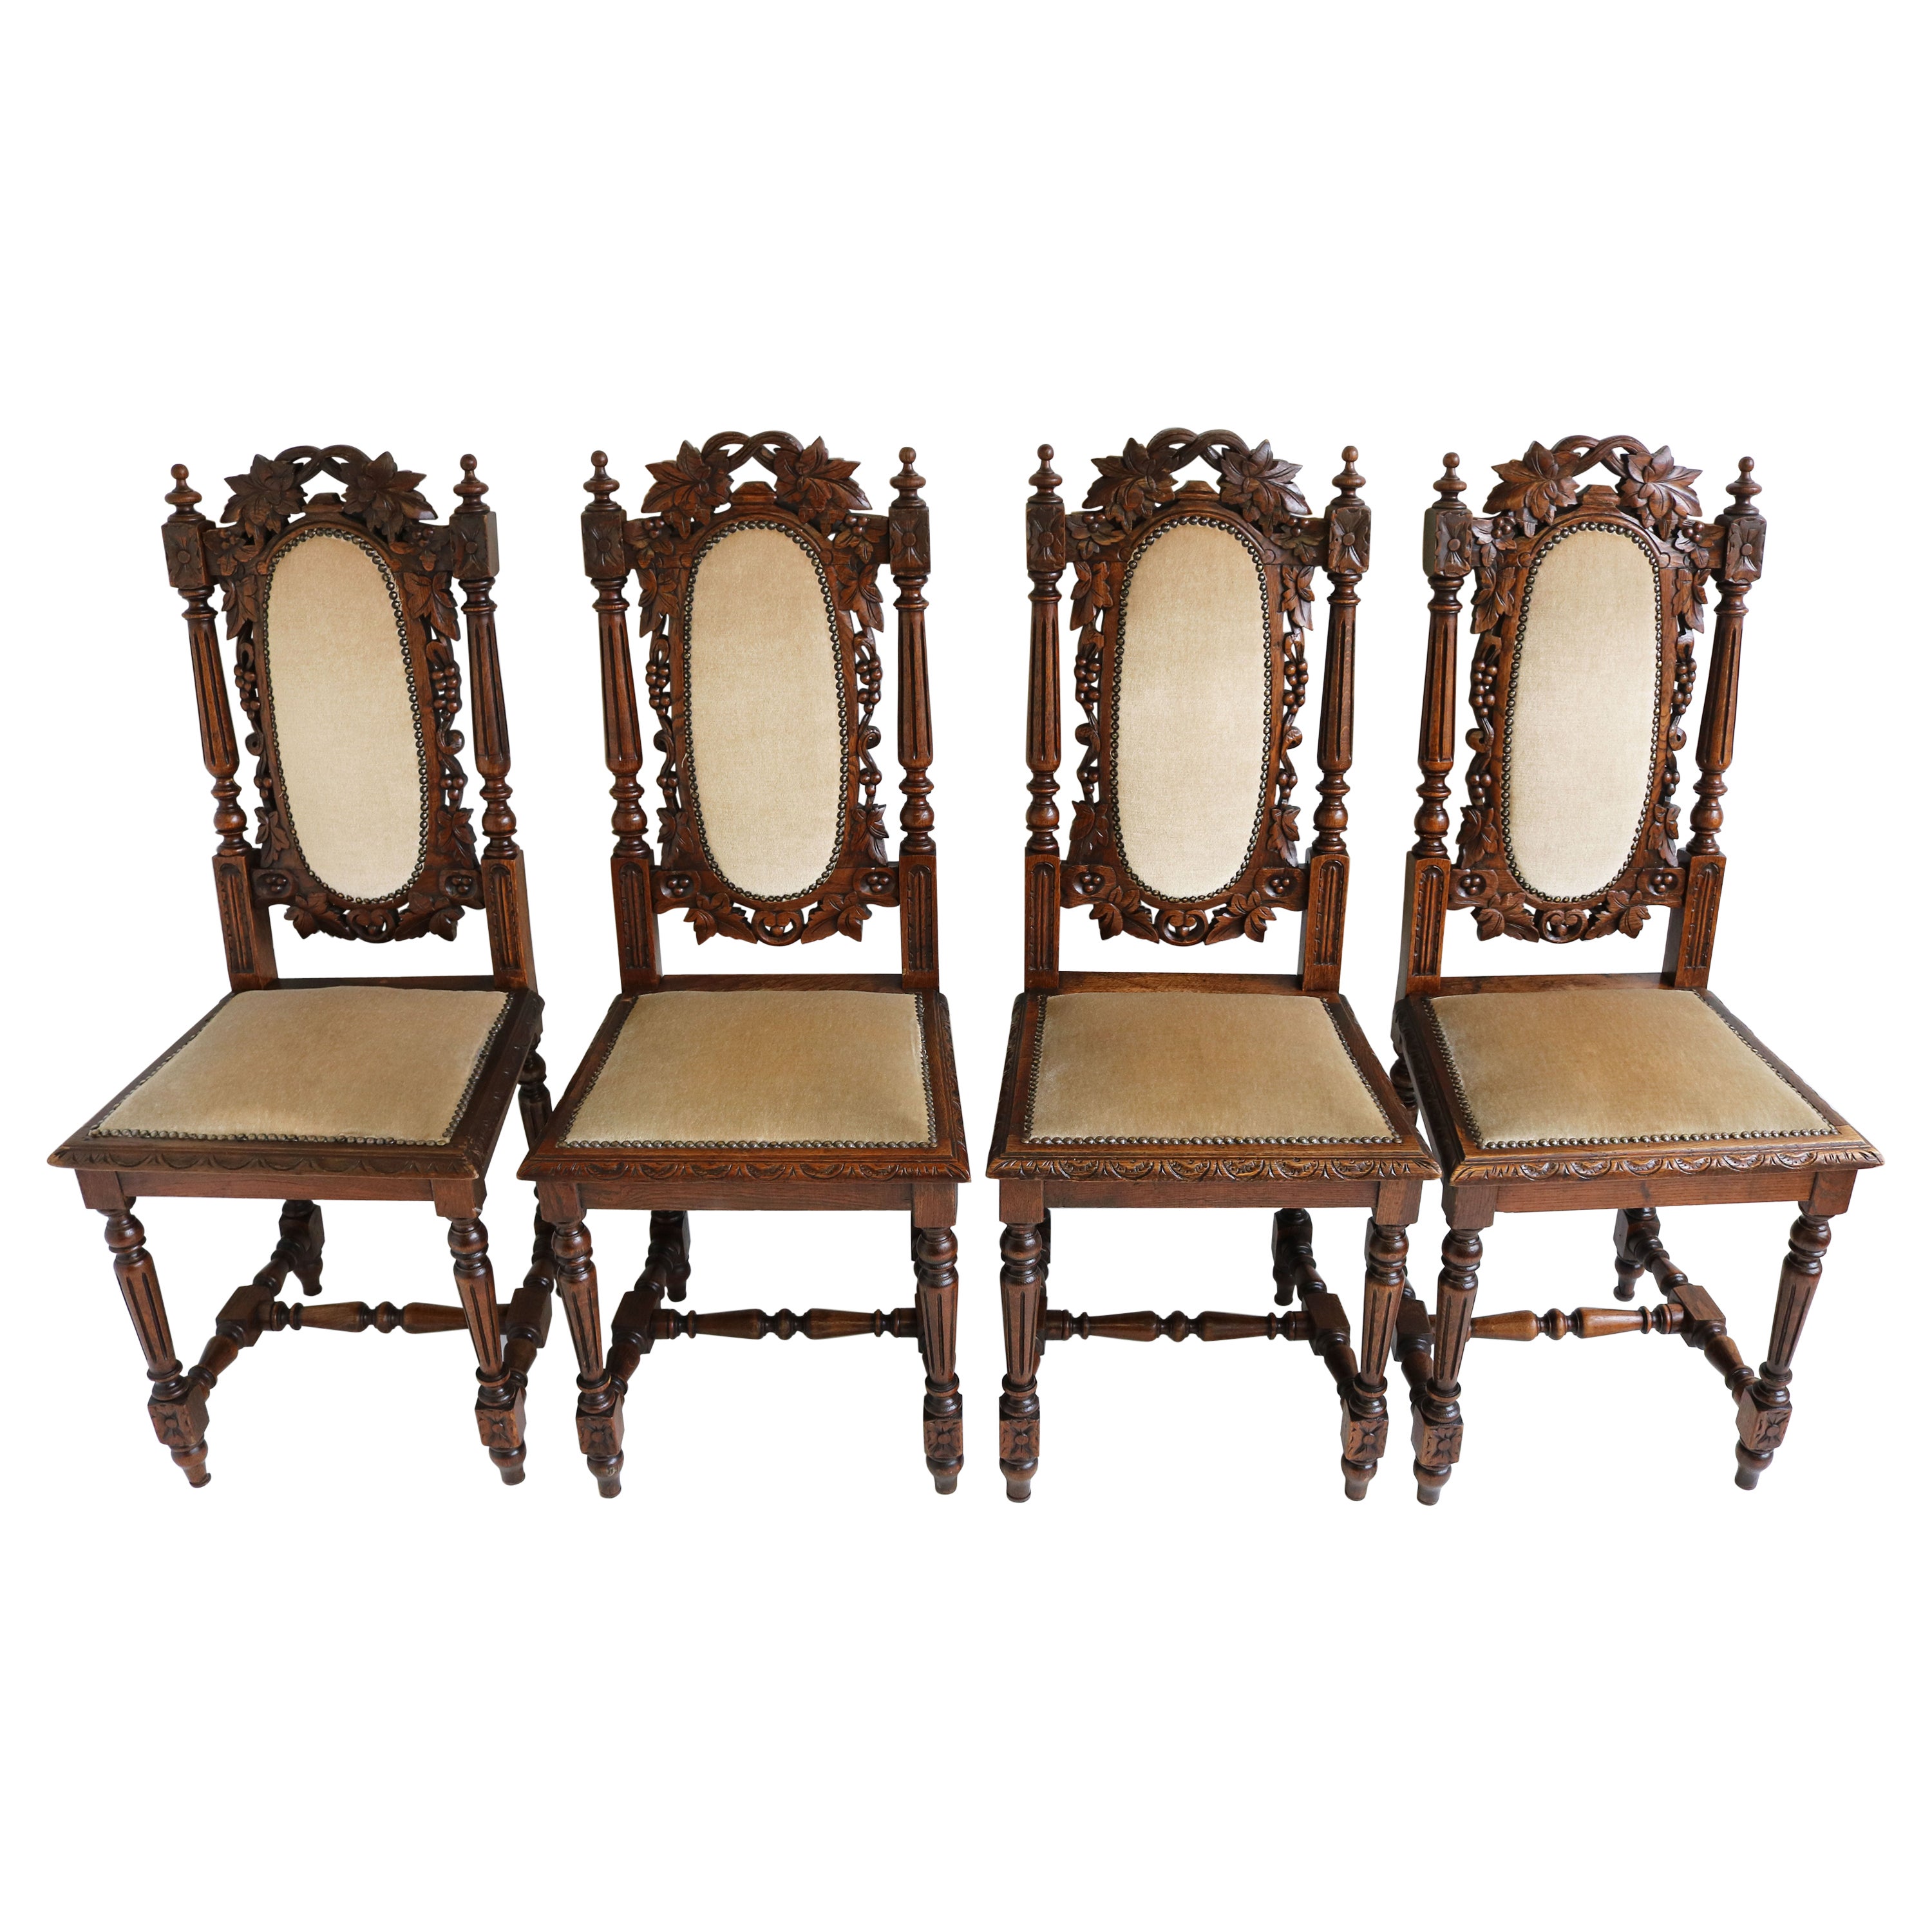 Satz von 4 französischen Renaissance-Revival-Stühlen im Jagdstil aus geschnitzter Eiche, Schwarzwälder Wald